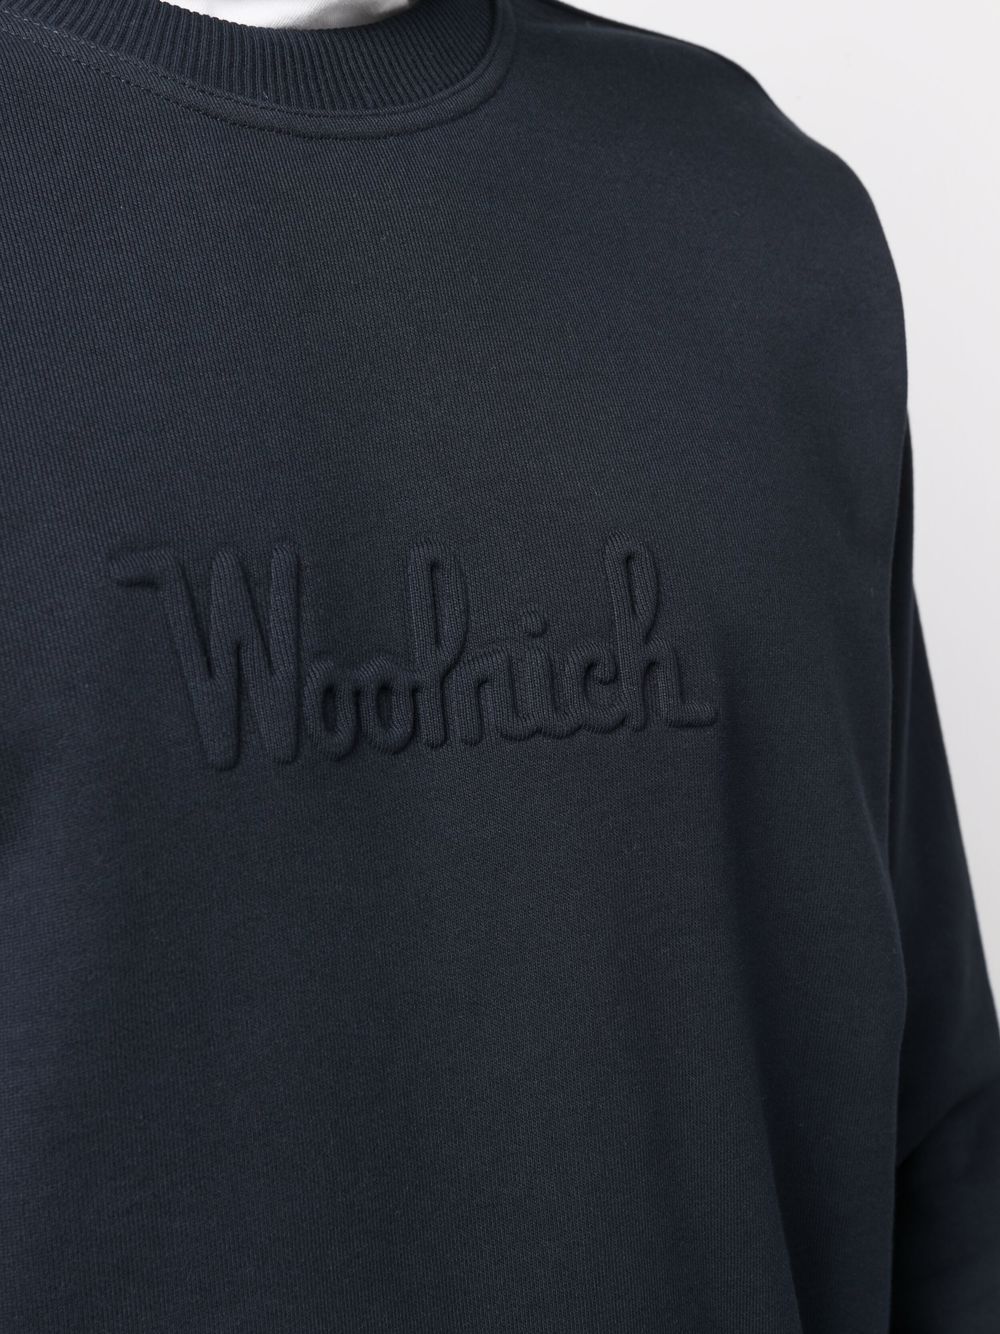 фото Woolrich толстовка с вышитым логотипом